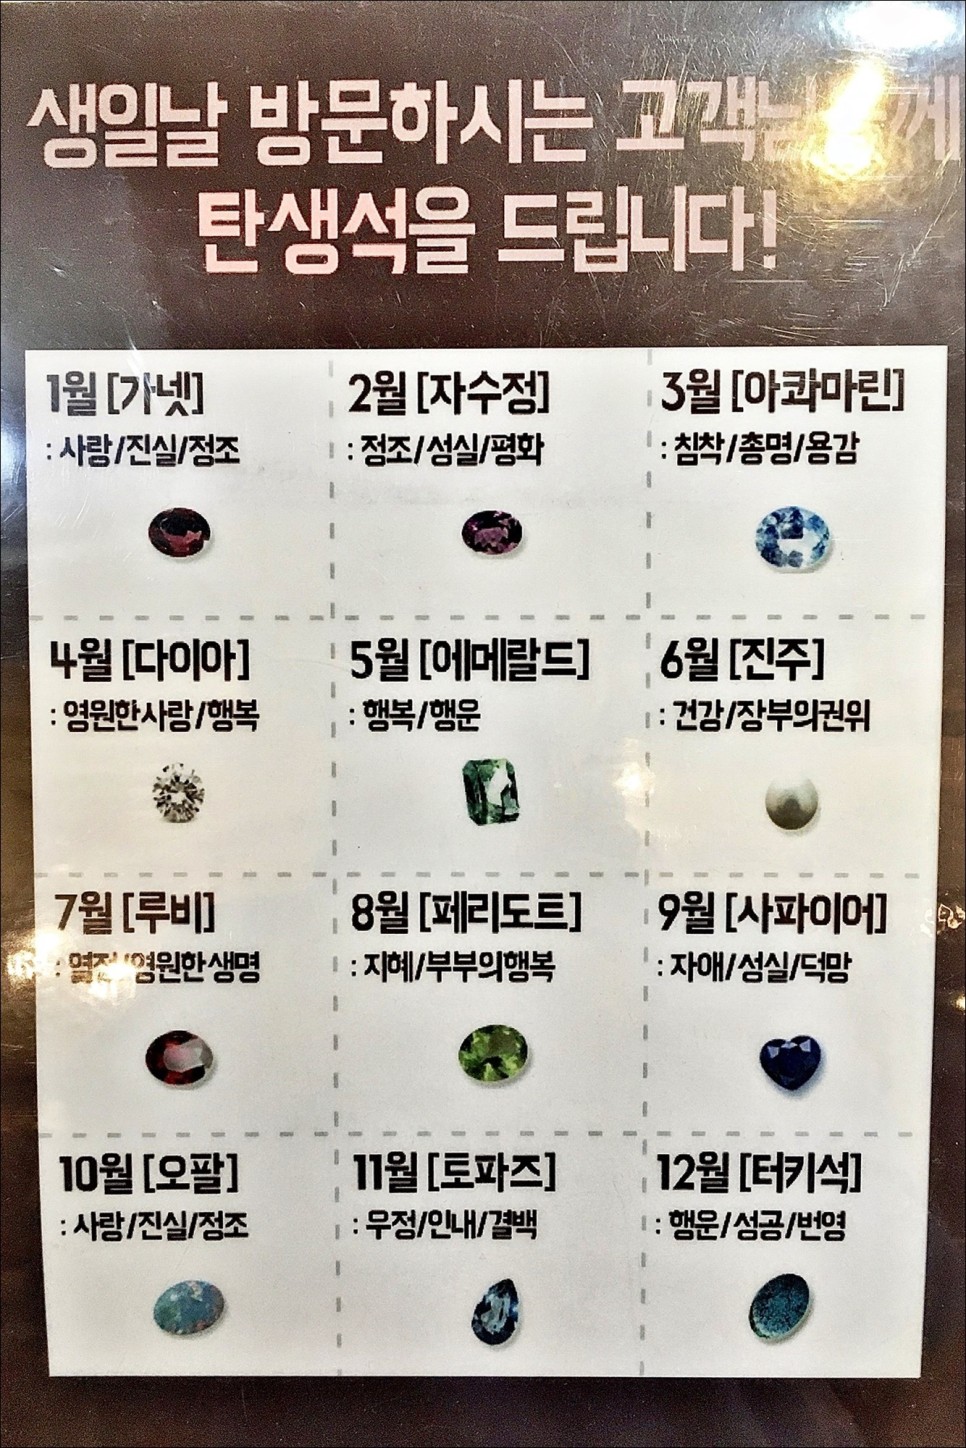 서울 실내데이트 추천 이태원 놀거리 반지더하기!